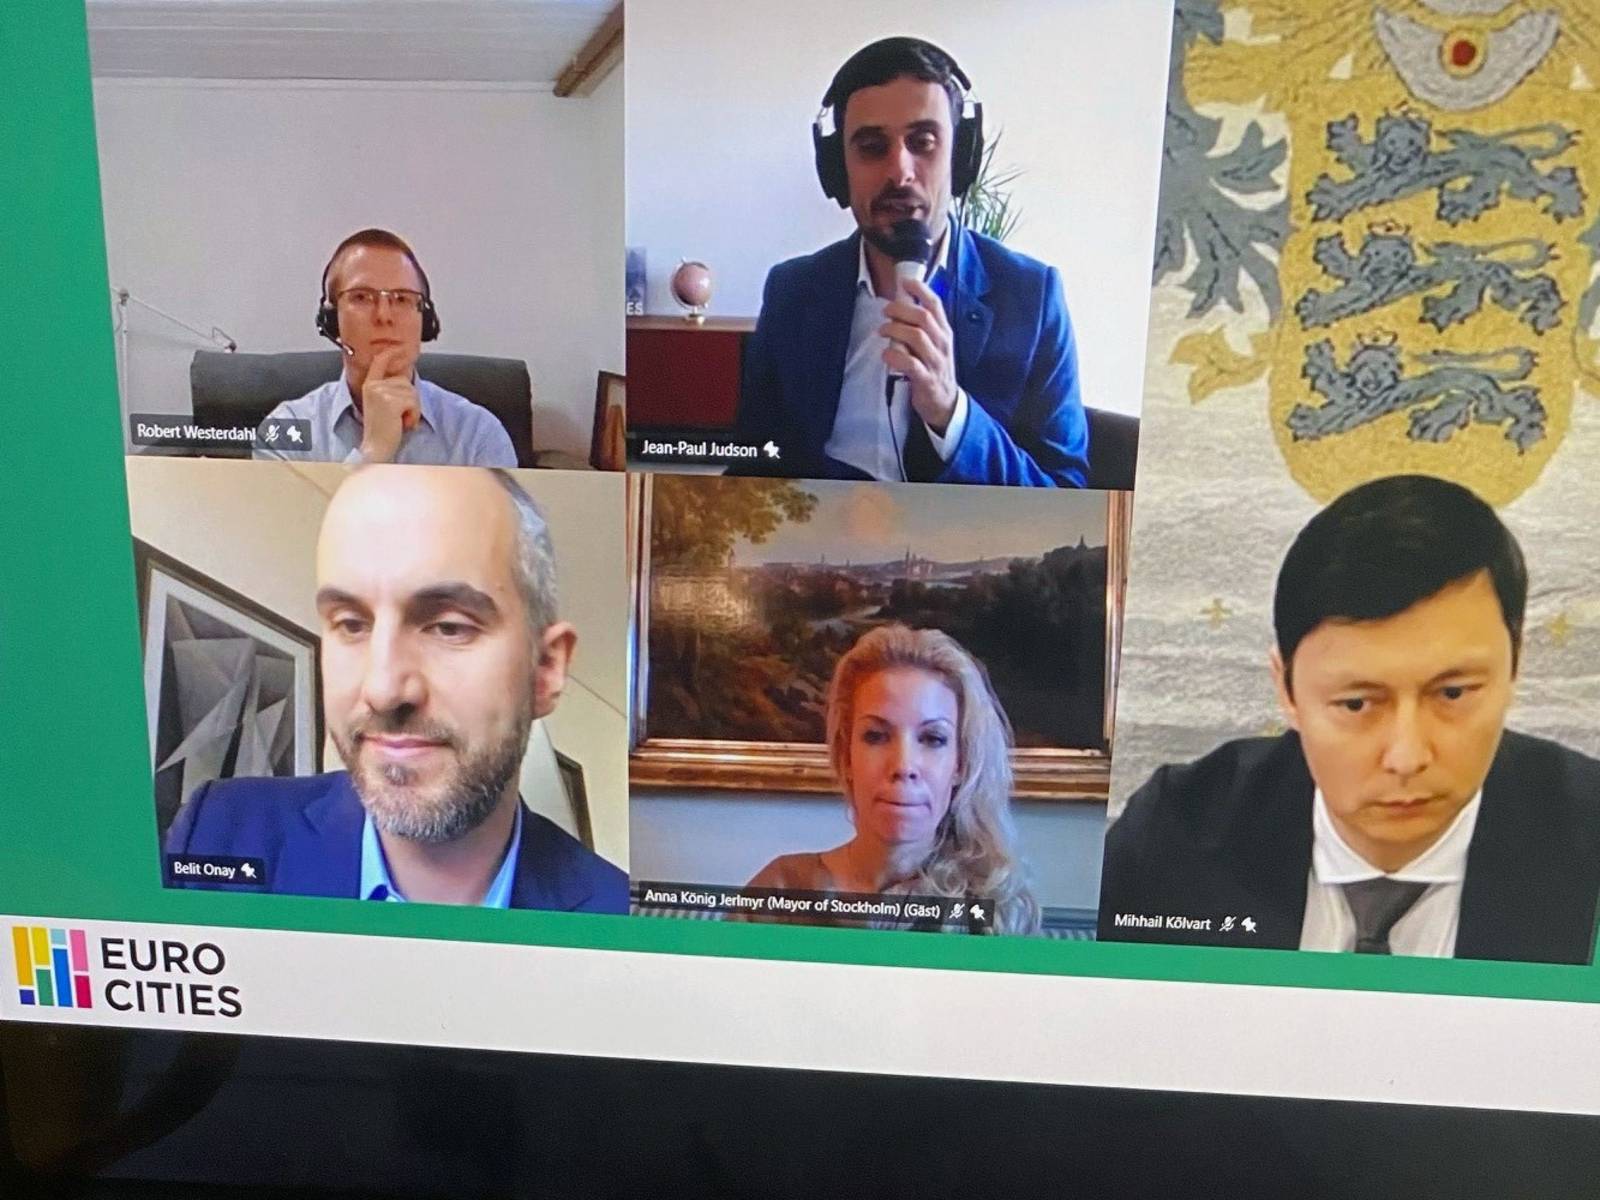 Videokonferenz: Fünf Personen in fünf Bildausschnitten sind auf einem Bildschirm zu sehen.